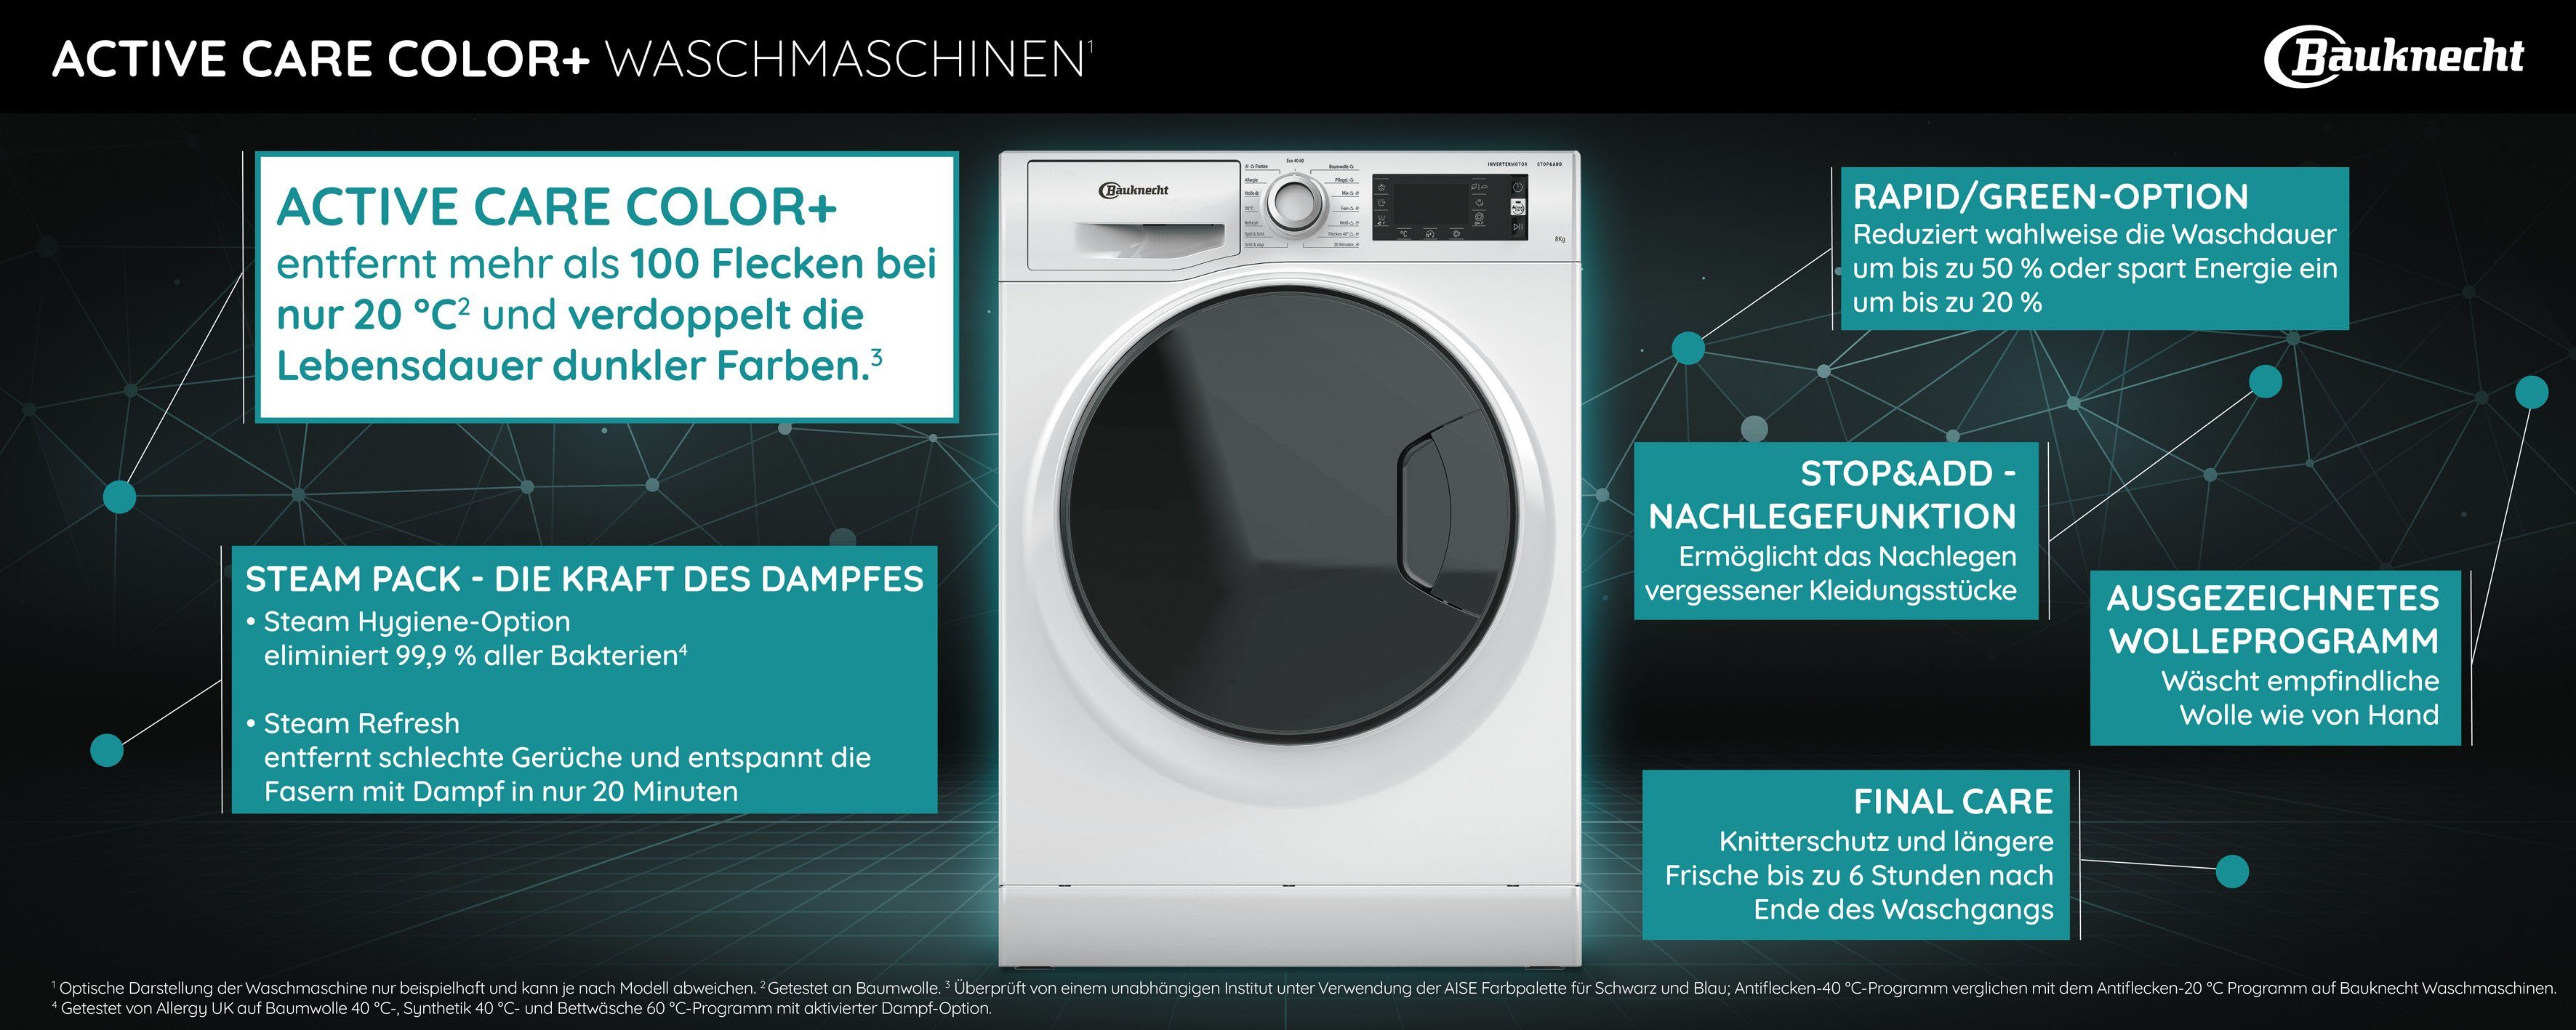 BAUKNECHT Waschmaschine WM Elite 923 kg, 1400 9 PS, U/min